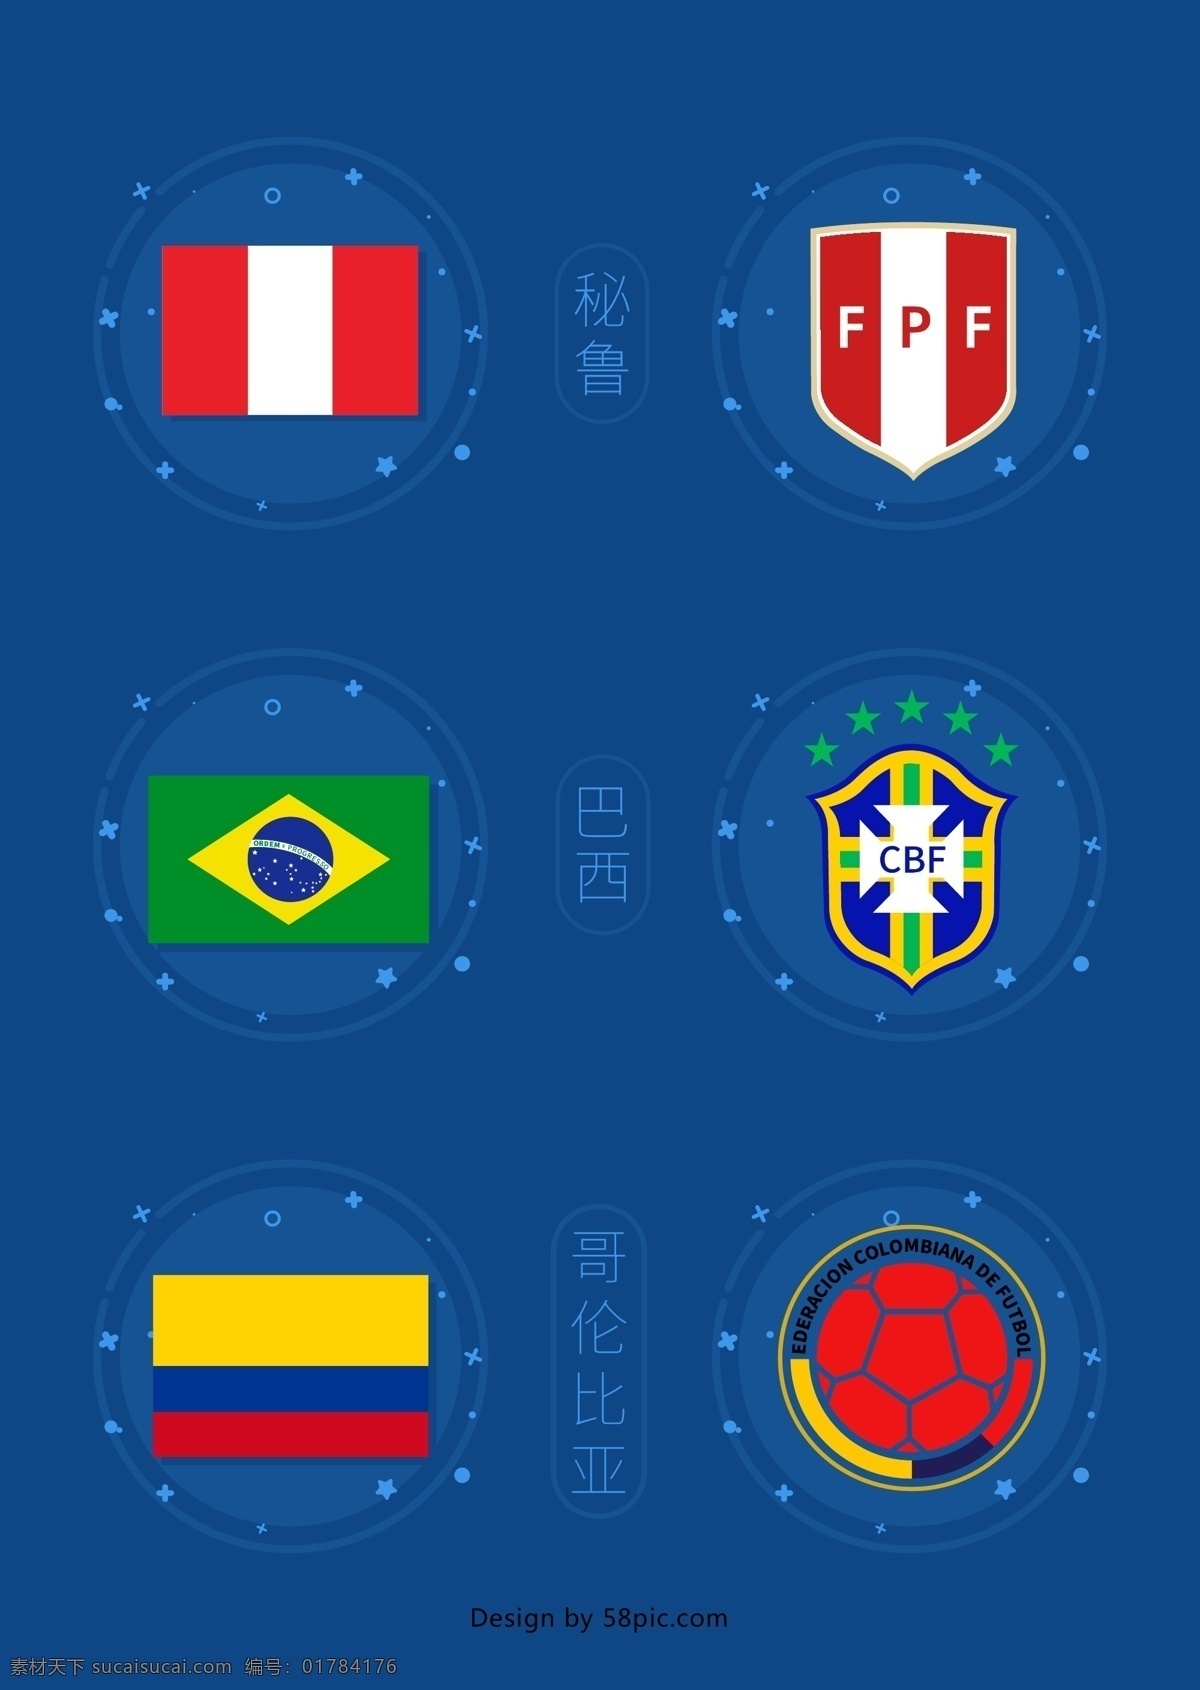 2018 世界杯 南美洲 国旗 队 徽 元素 元素设计 巴西 秘鲁 哥伦比亚 队徽 俄罗斯